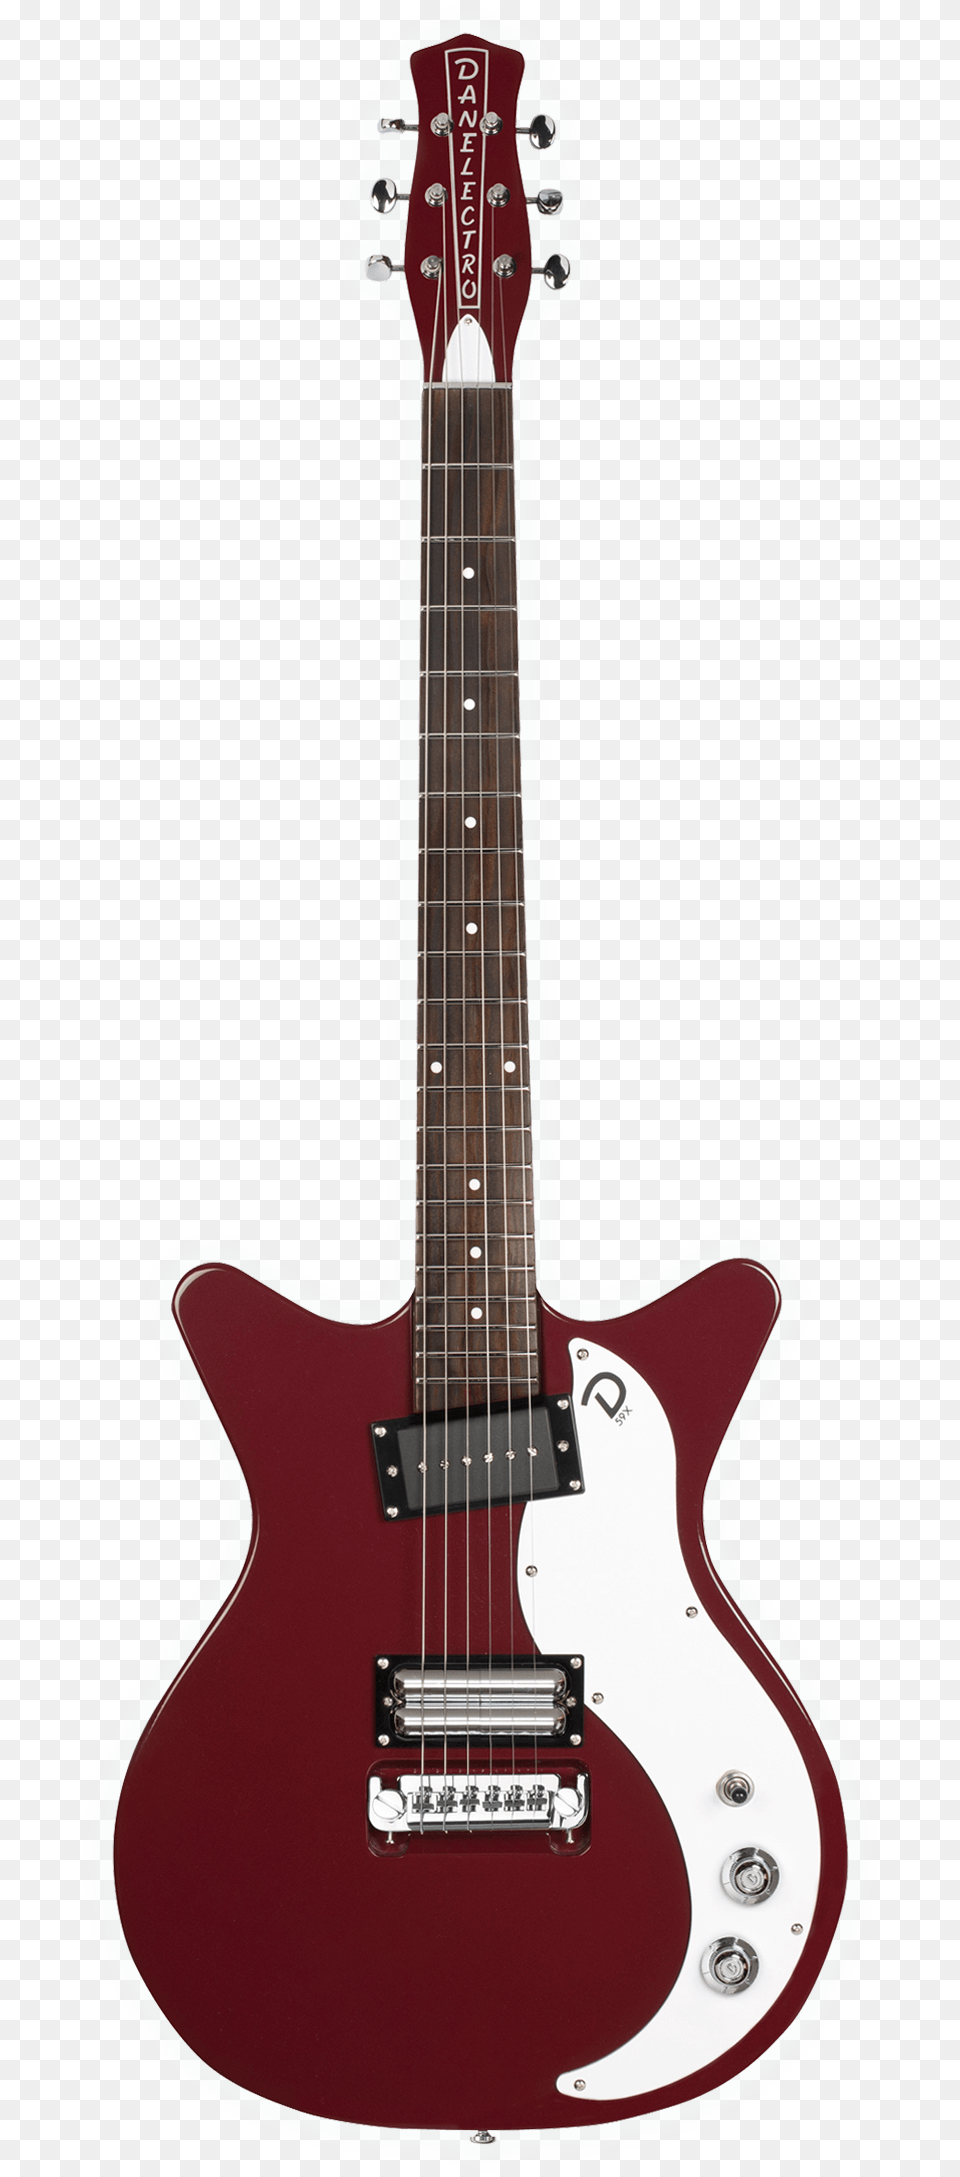 Danelectro, Guitar, Musical Instrument, Bass Guitar, Electric Guitar Png Image